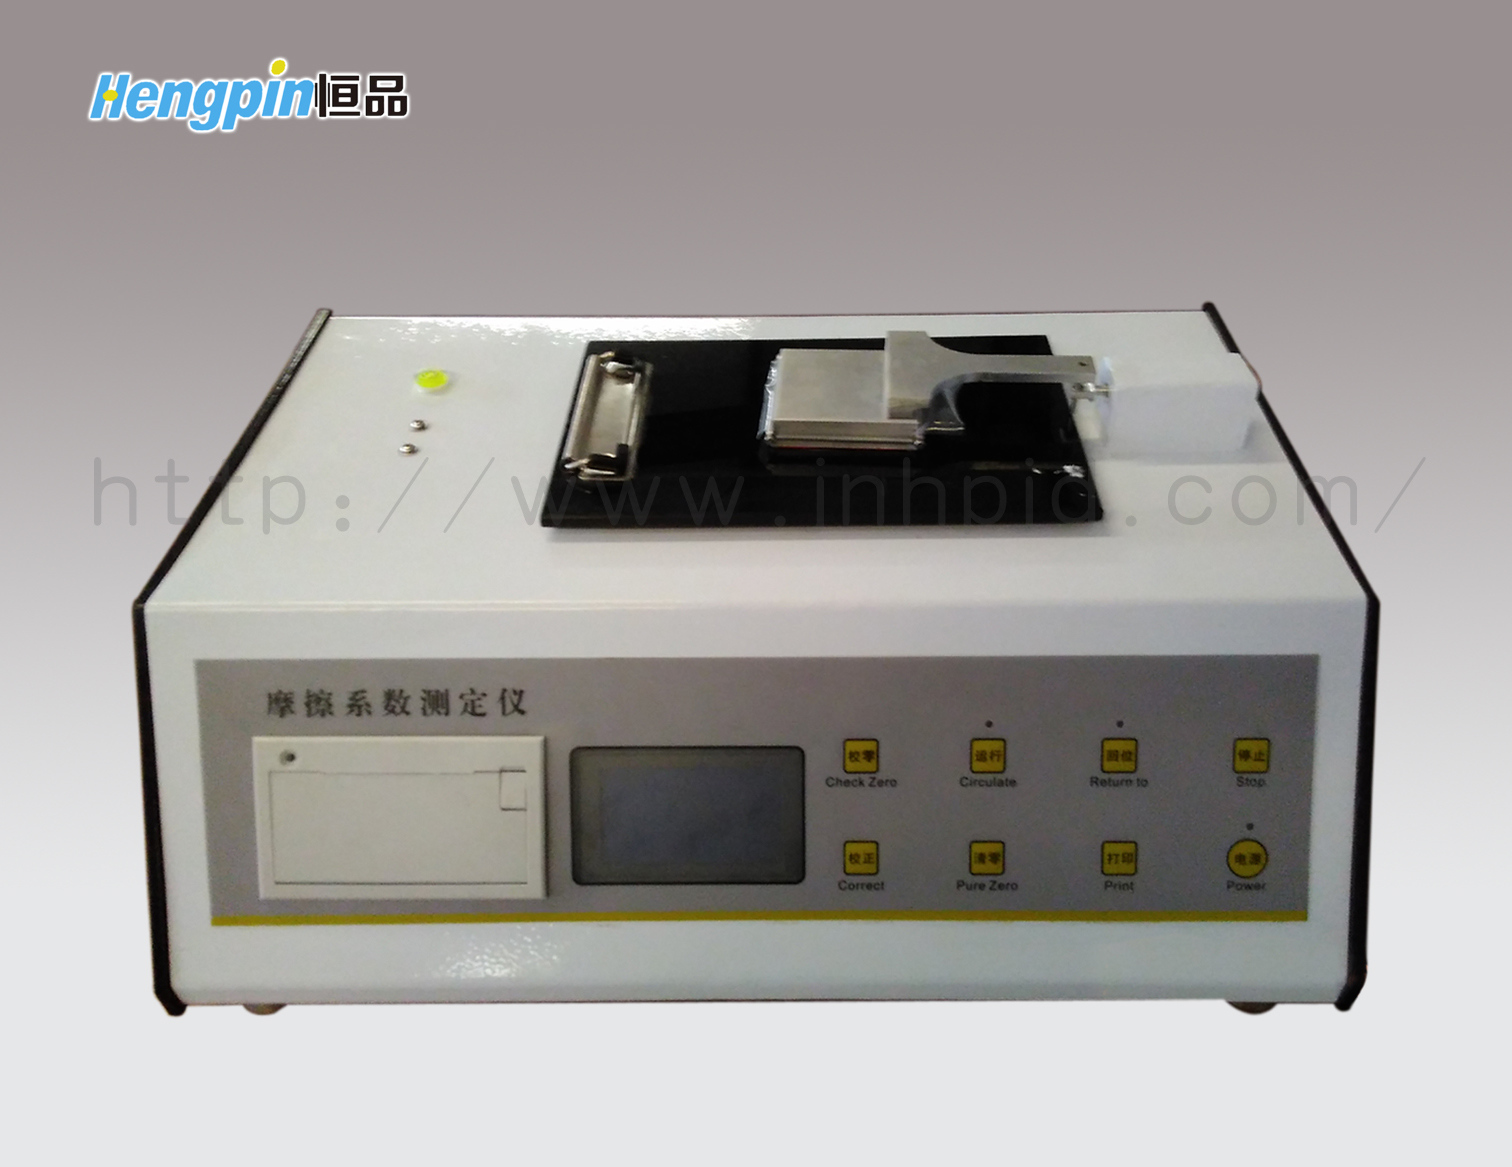 HP-MXD-02摩擦系數測定儀